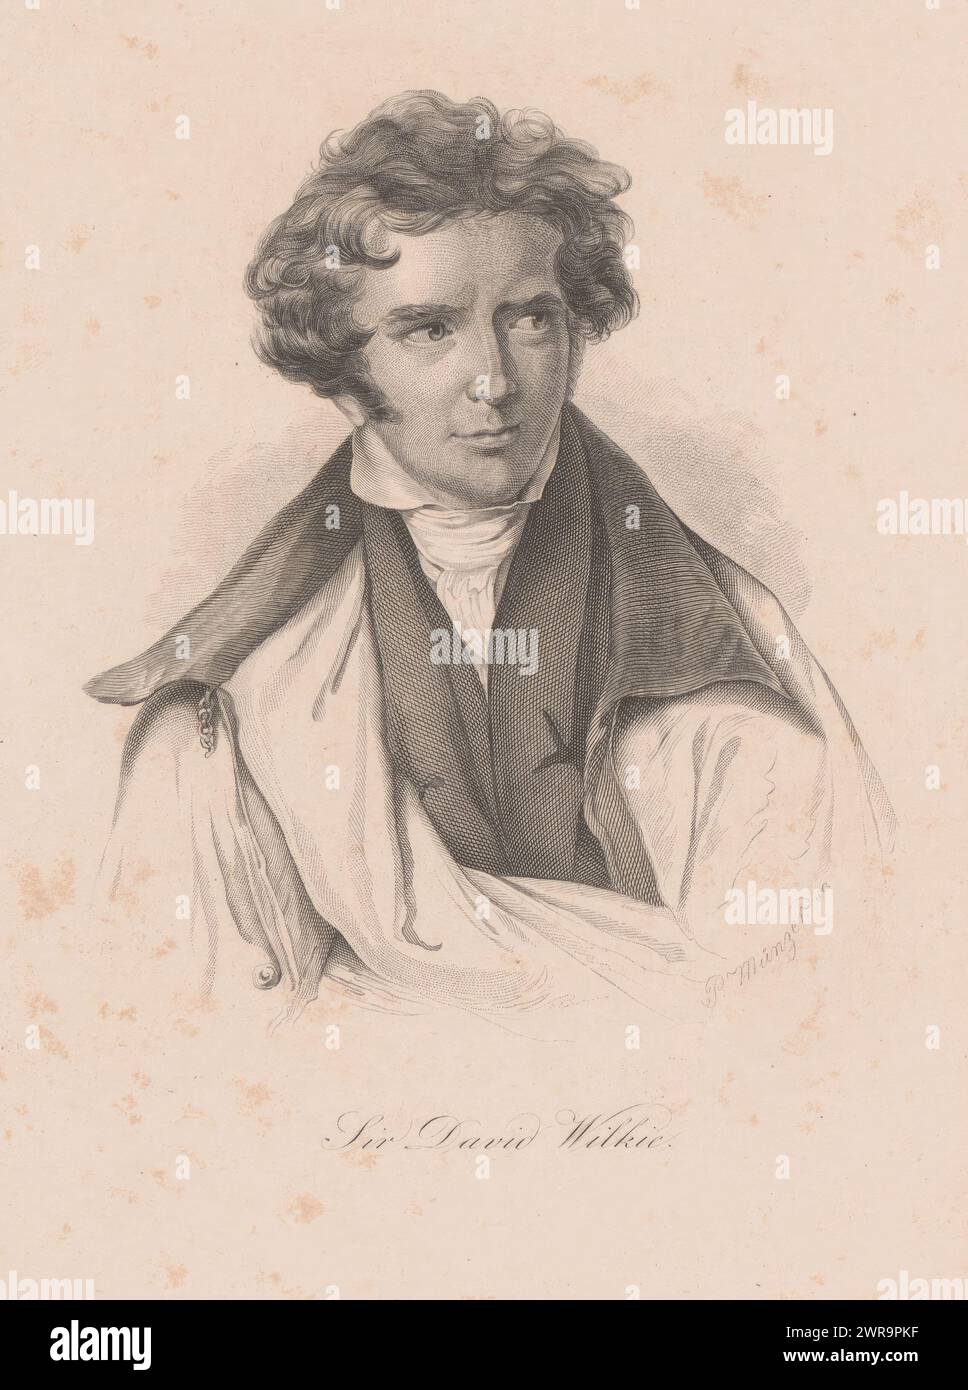 Ritratto di David Wilkie, stampatore: Philipp Muenzer, 1800 - 1899, carta, incisione, incisione, altezza 179 mm x larghezza 145 mm, stampa Foto Stock